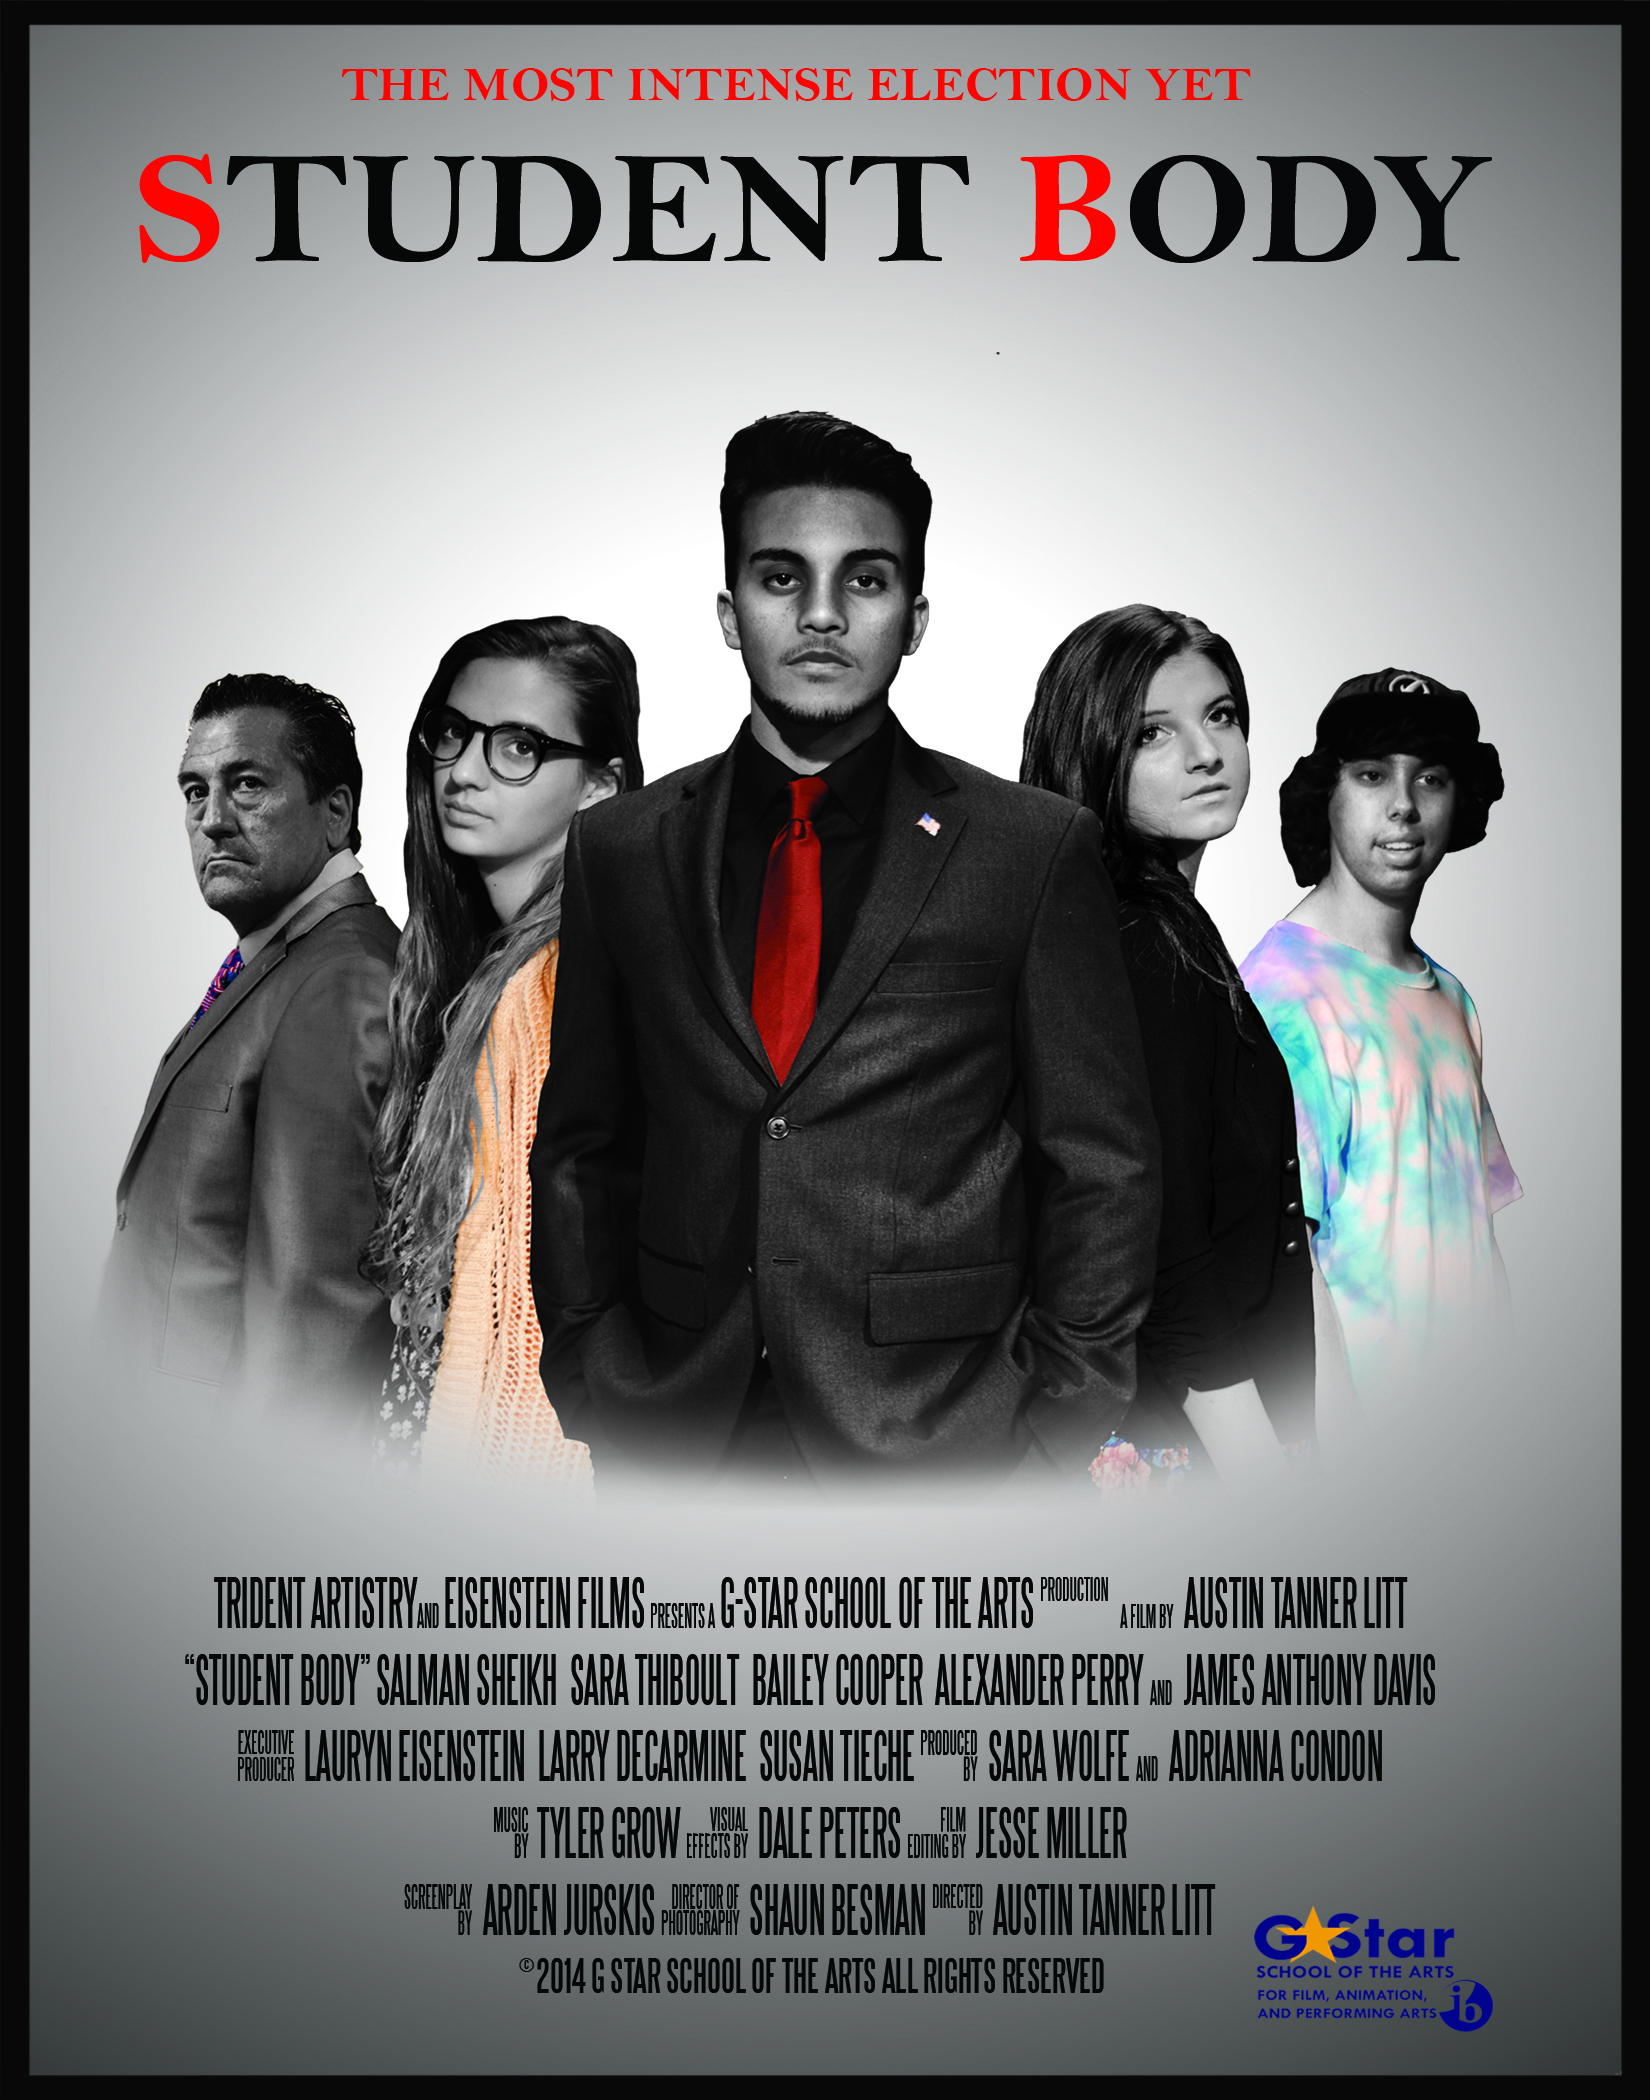 Student Body